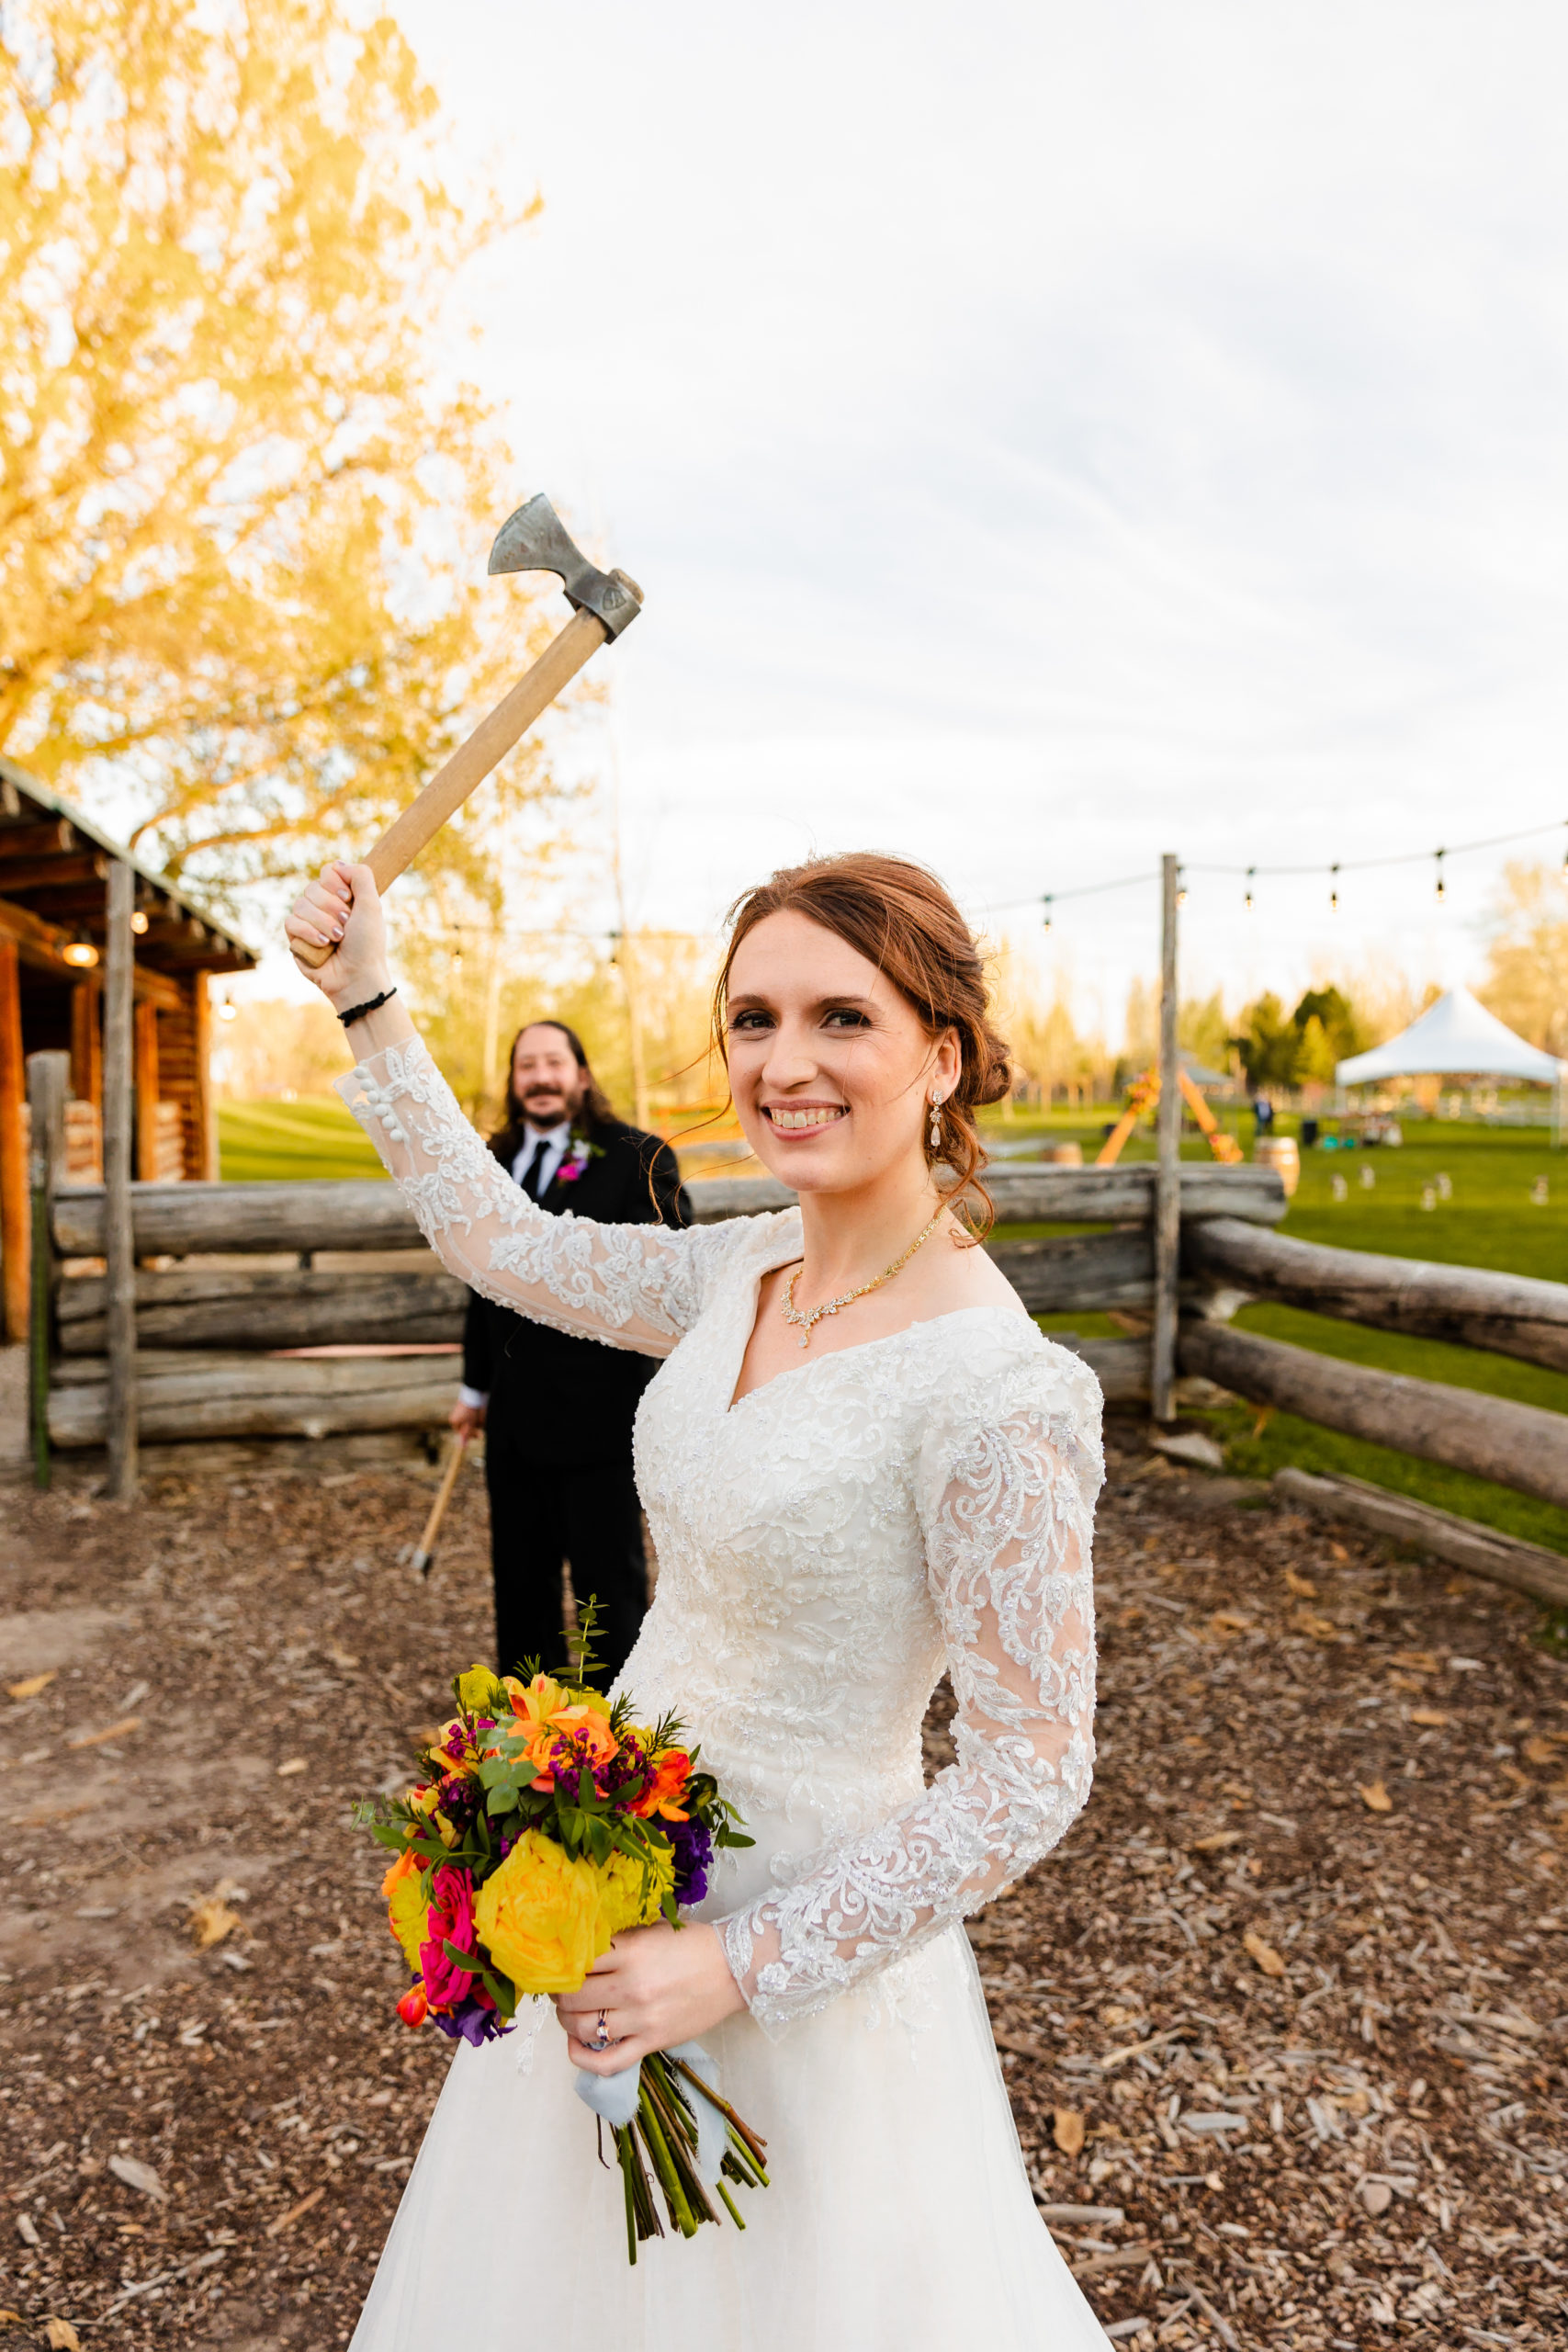 bride holding axe during axe throwing at wedding reception